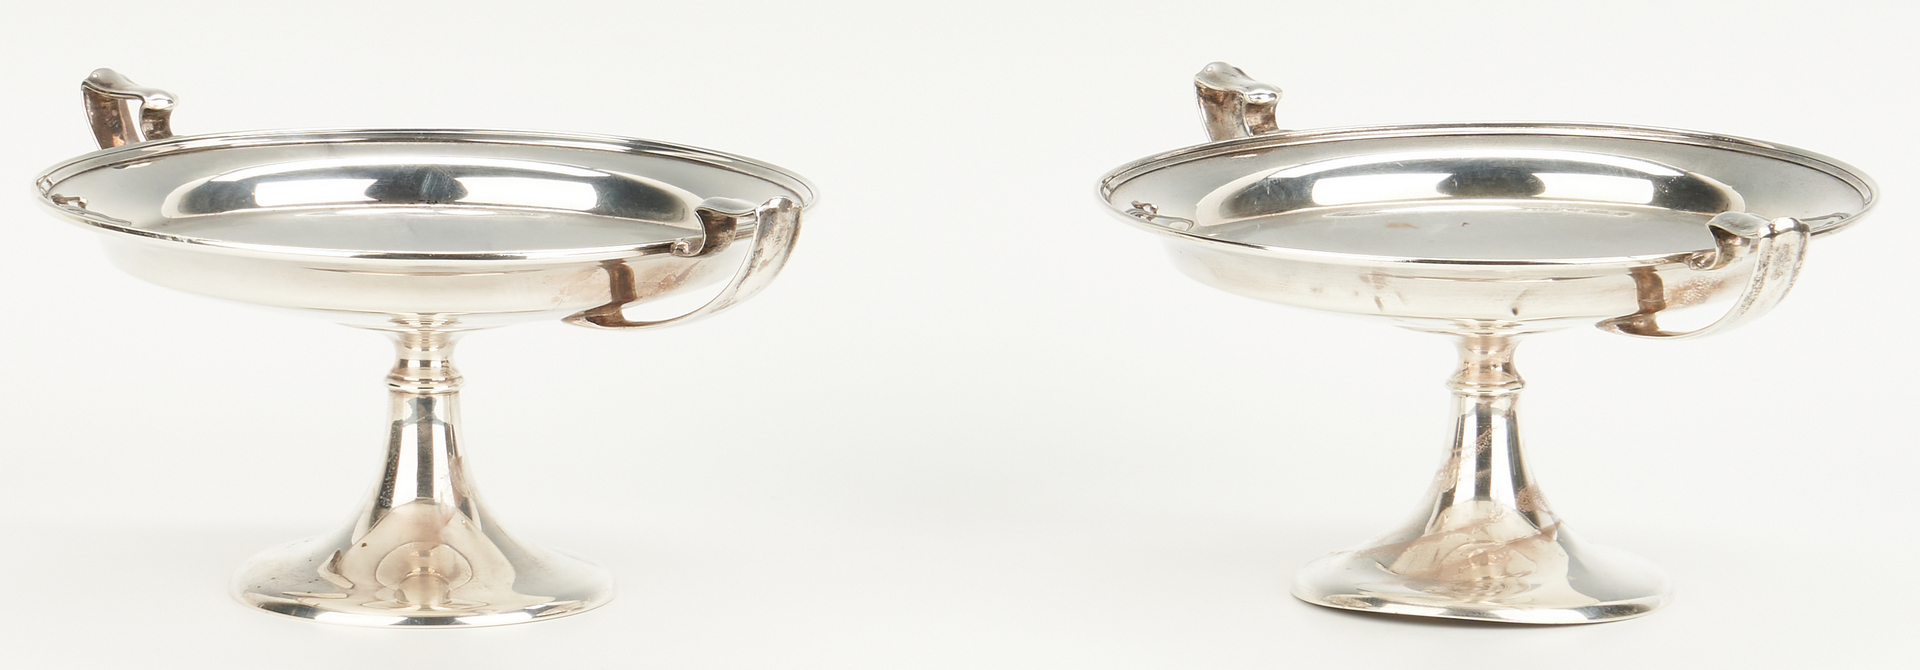 Lot 468: Art Nouveau Silver Bowl, Repousse Tray & 2 Tazzas